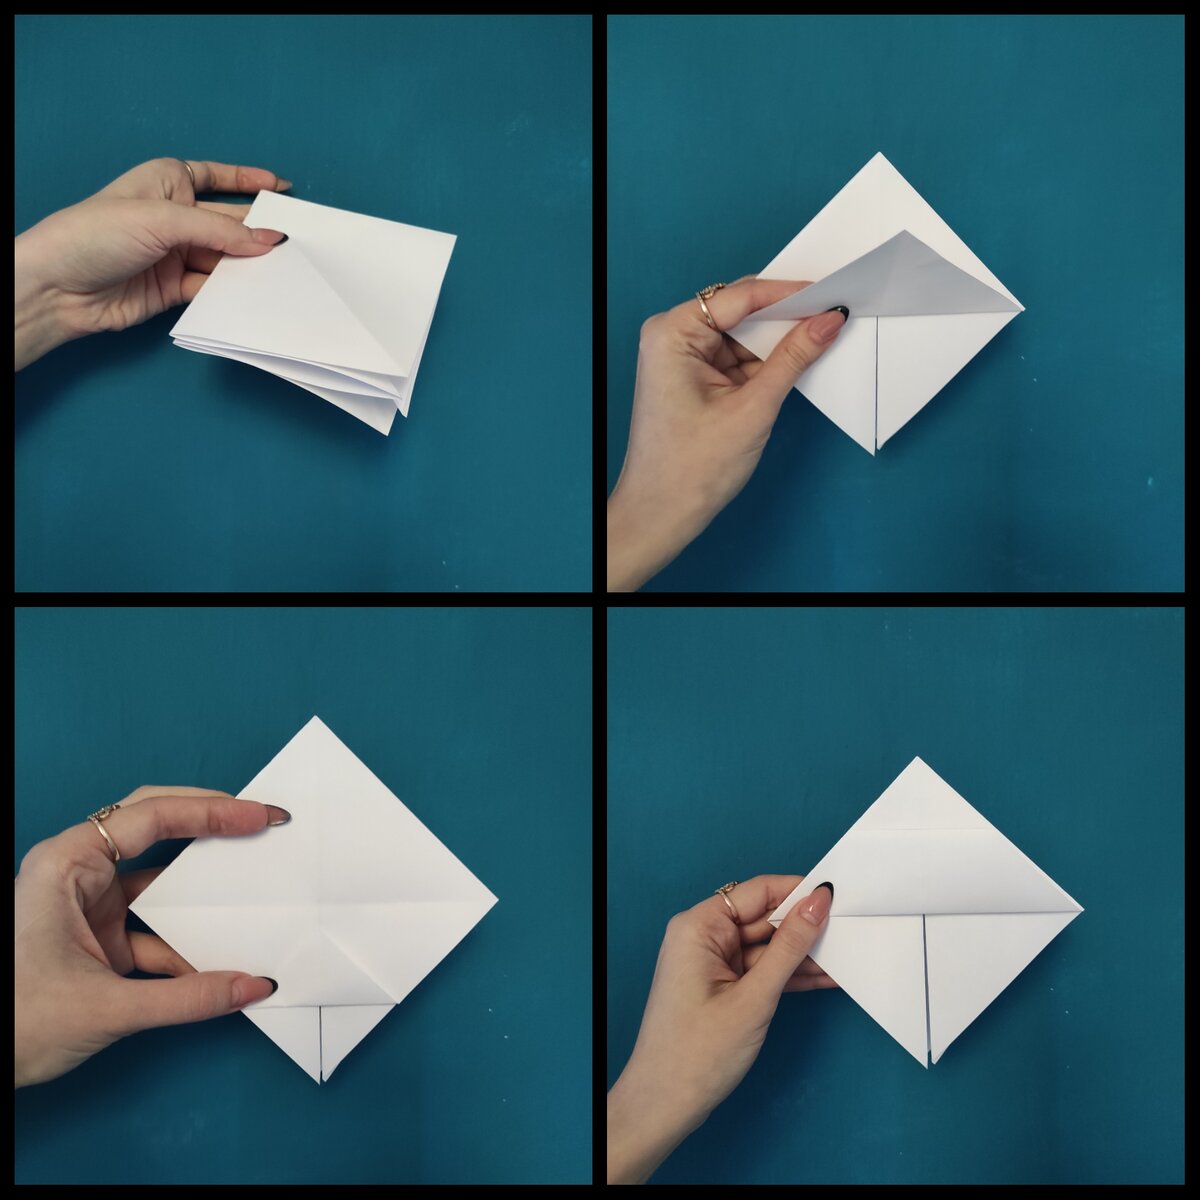 Подарок на день рождения в технике оригами — 5 классных идей